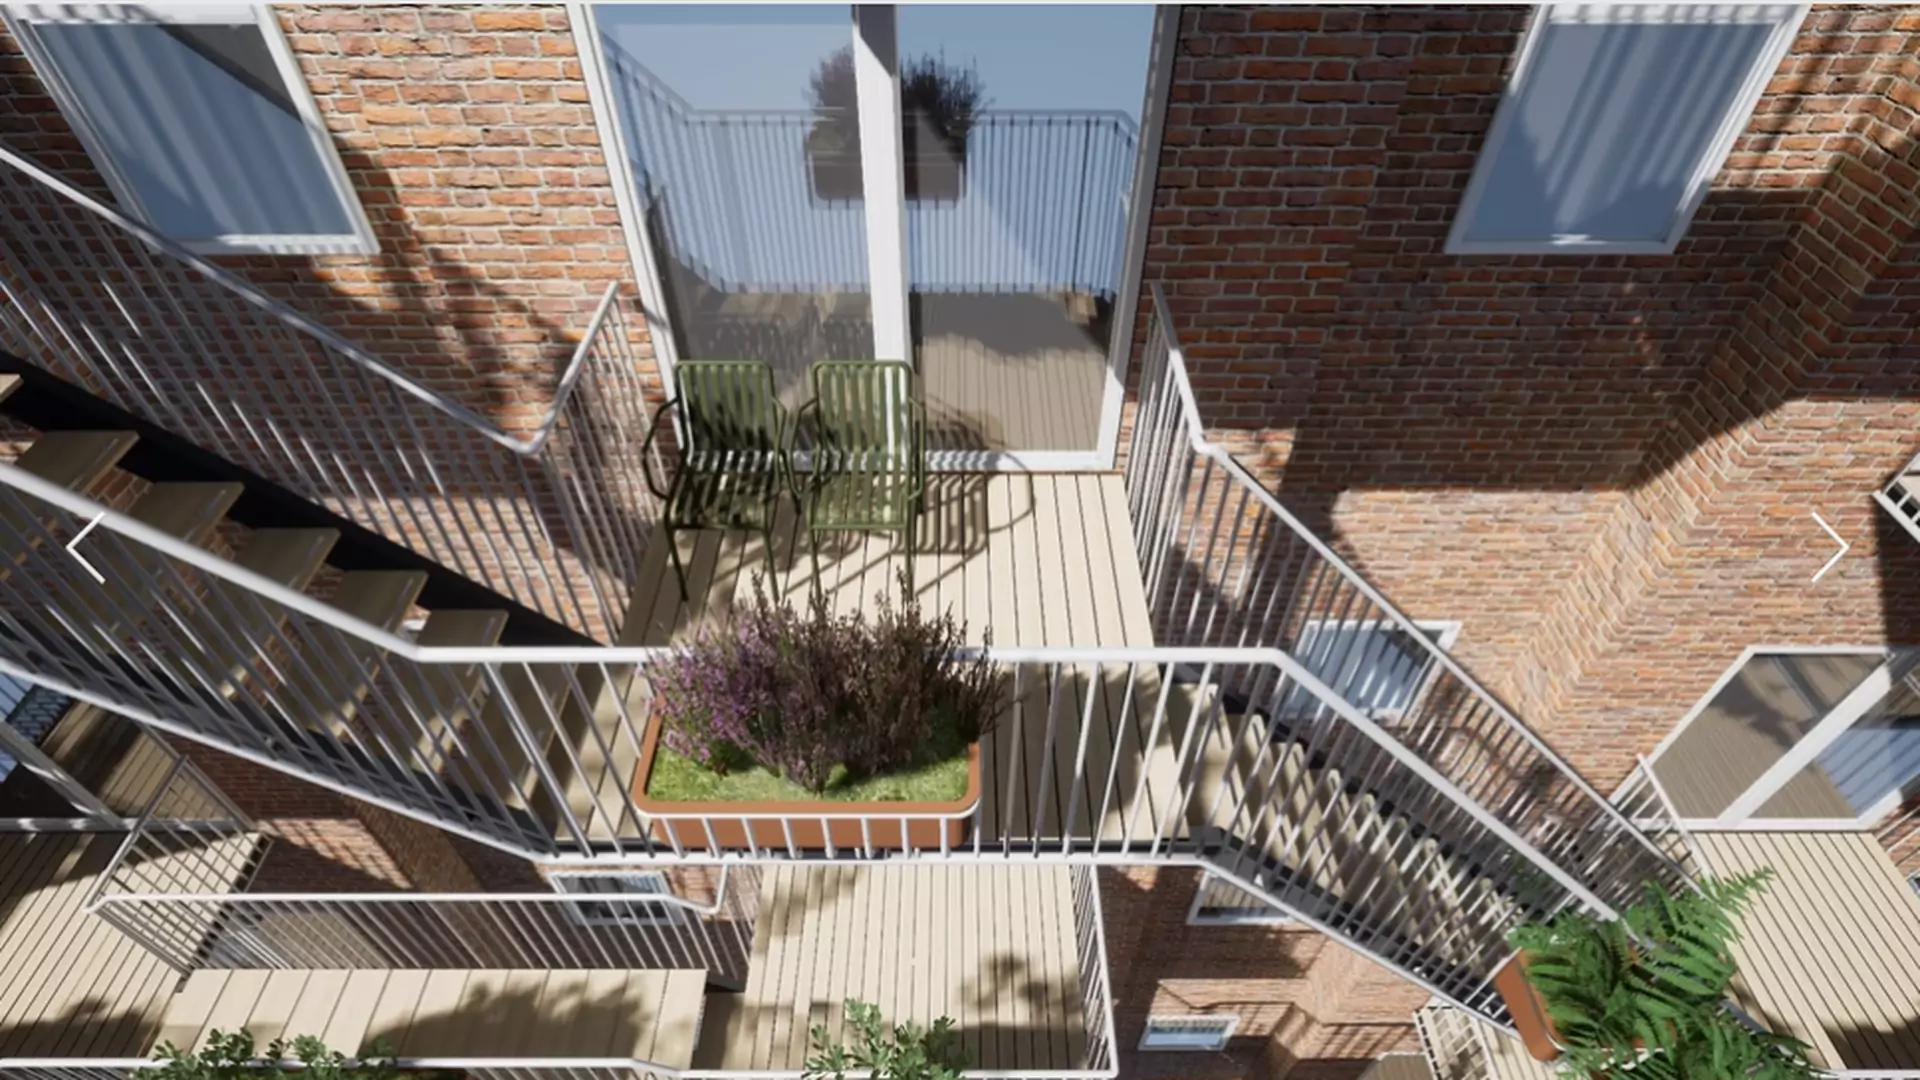 Społeczne balkony - fajny pomysł na integrację sąsiadów?